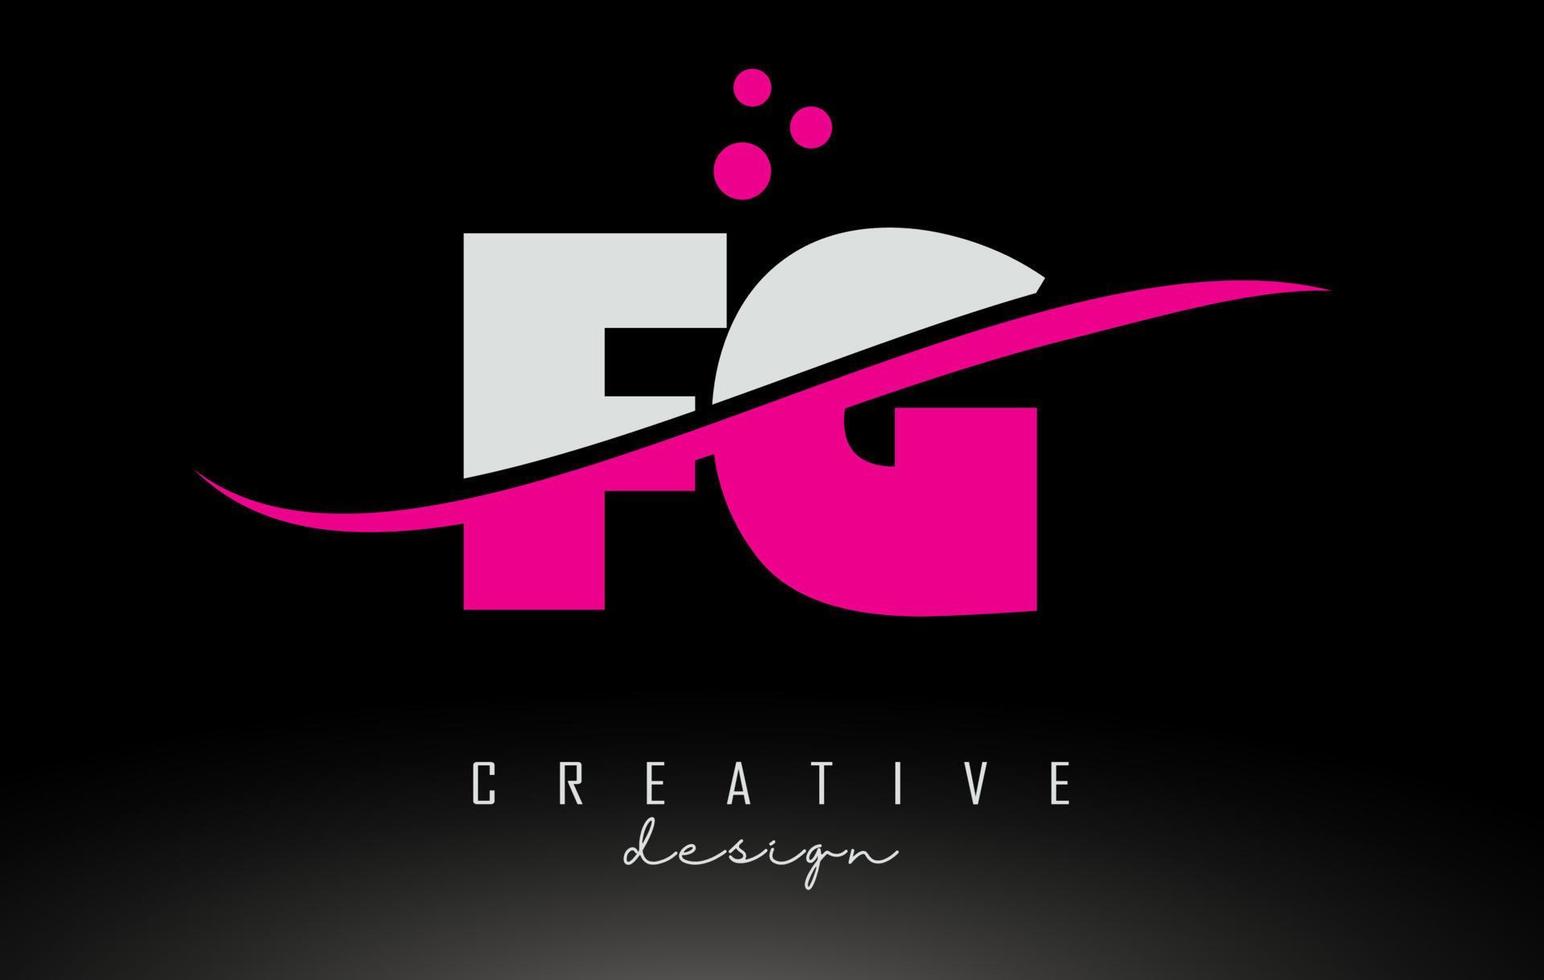 fg fg logo lettre blanche et rose avec swoosh et points. vecteur